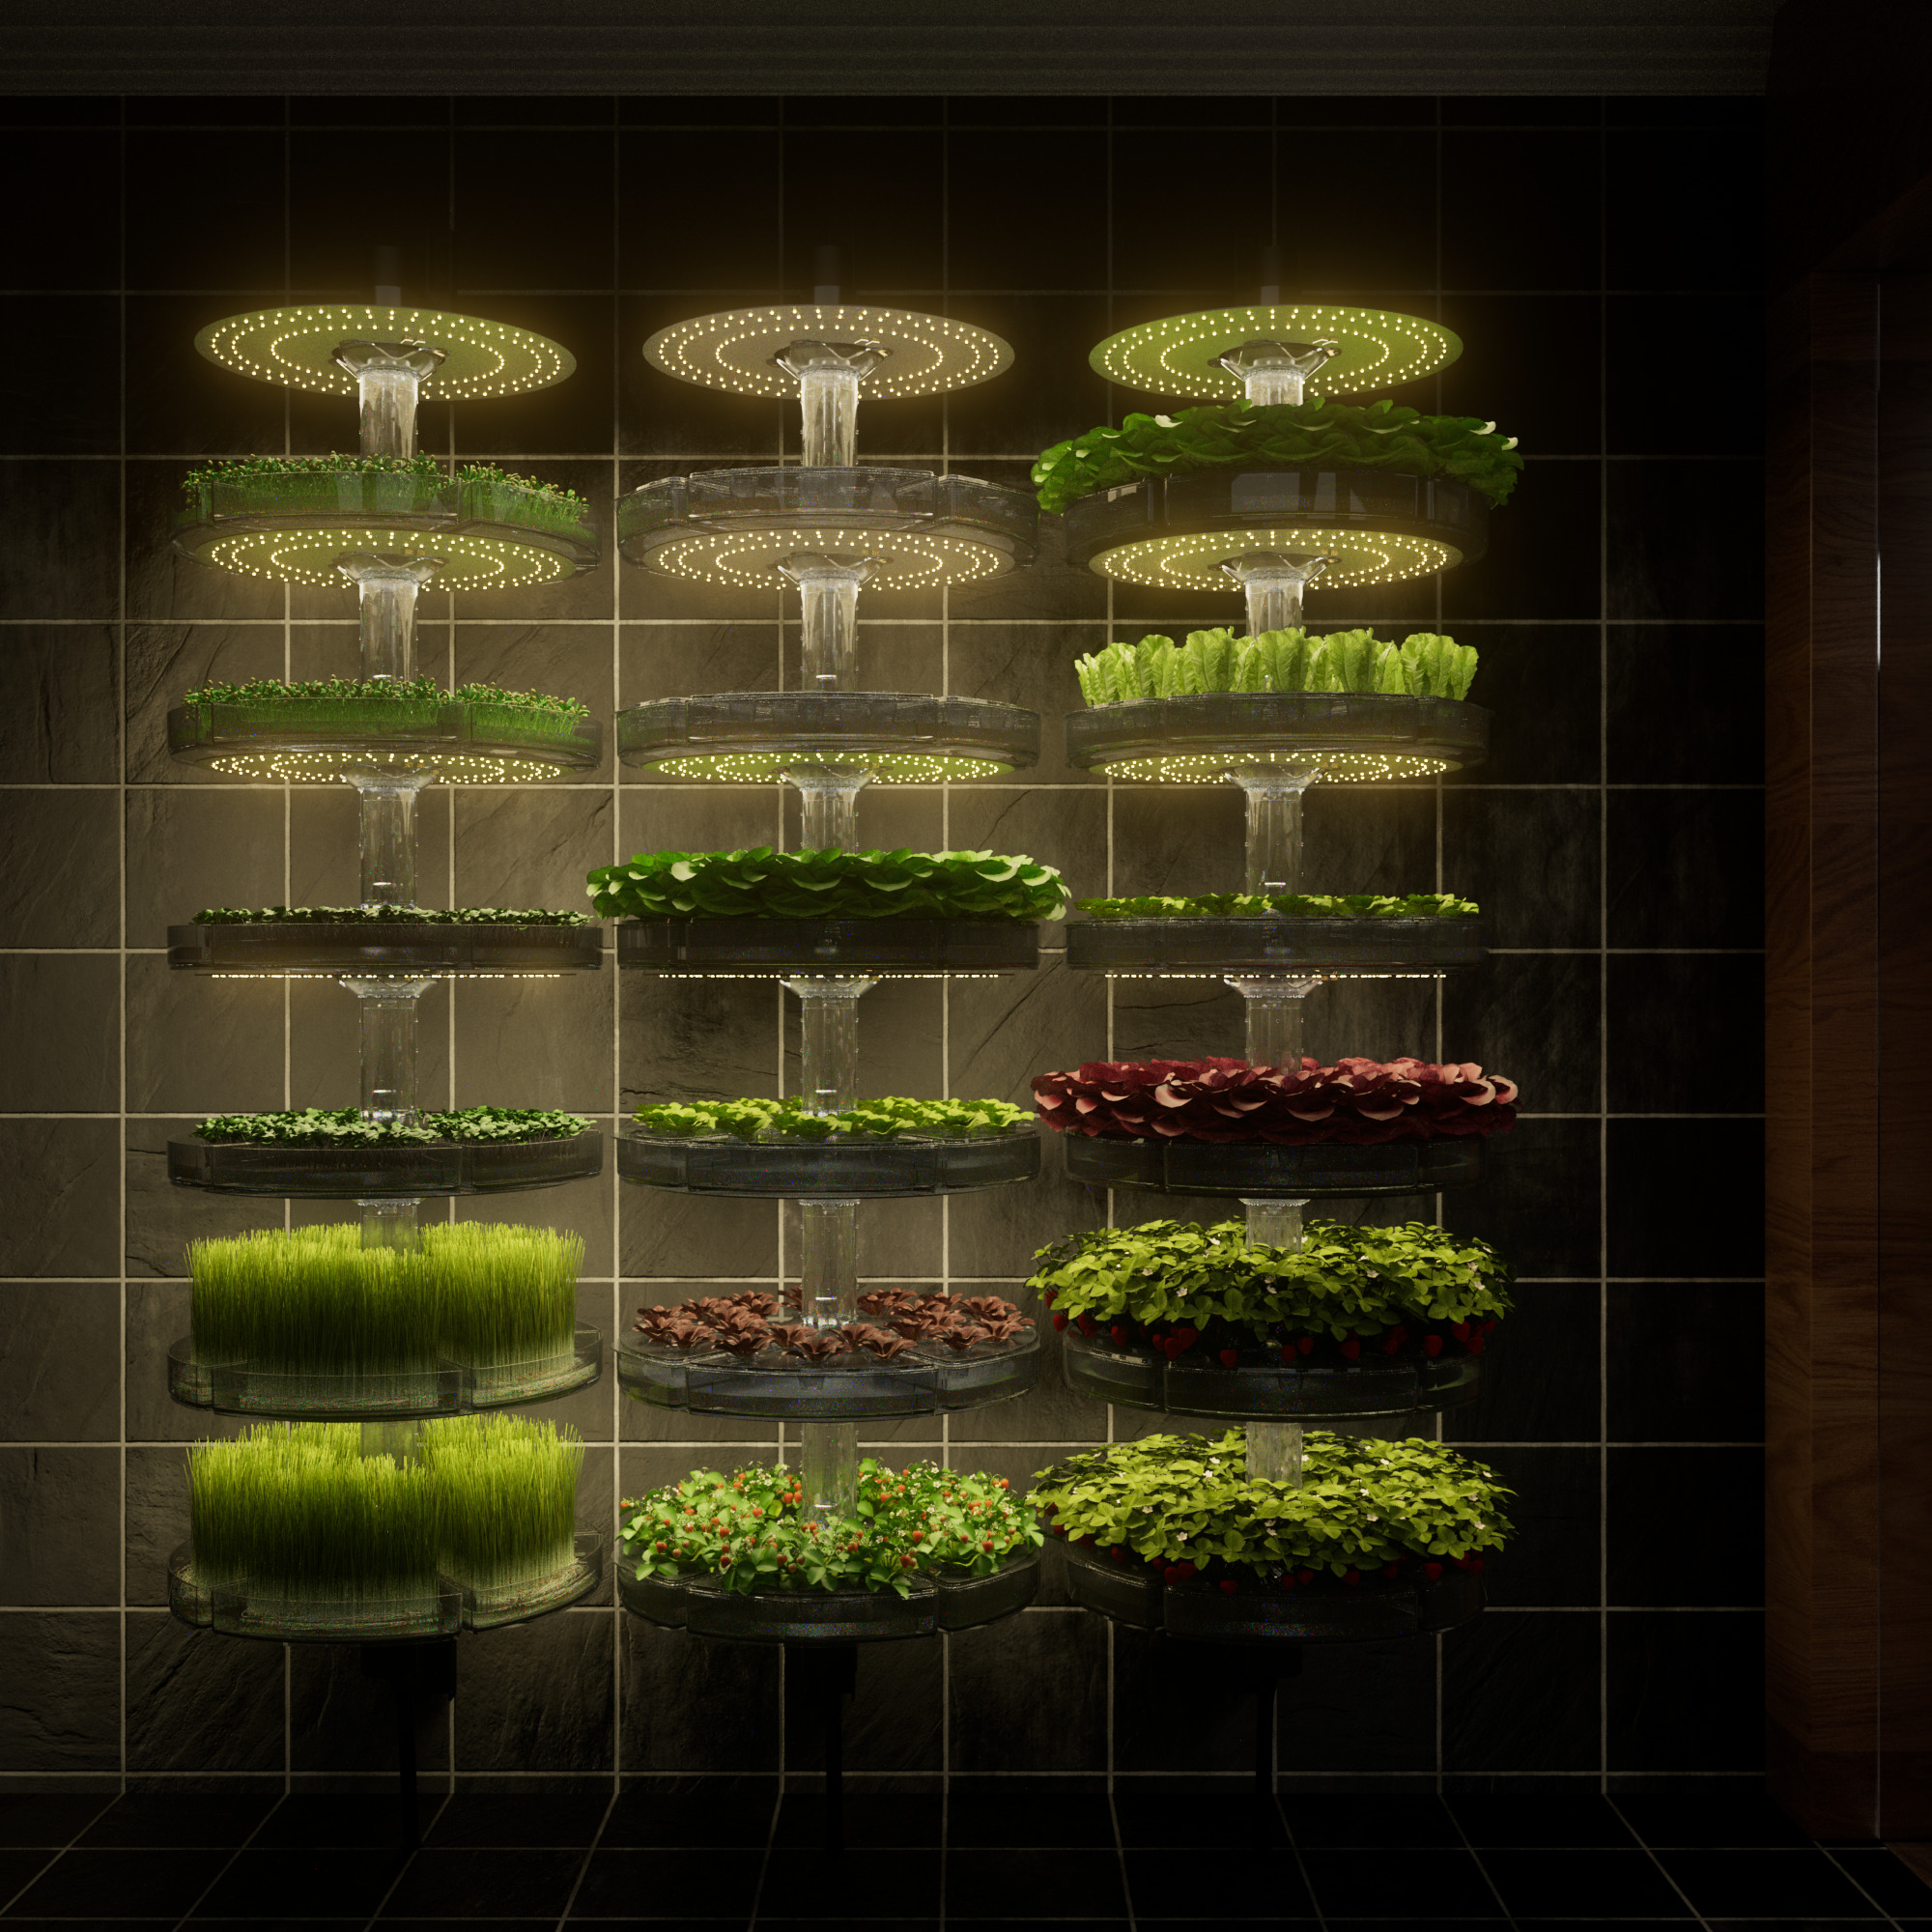 3D product renders of indoor garden